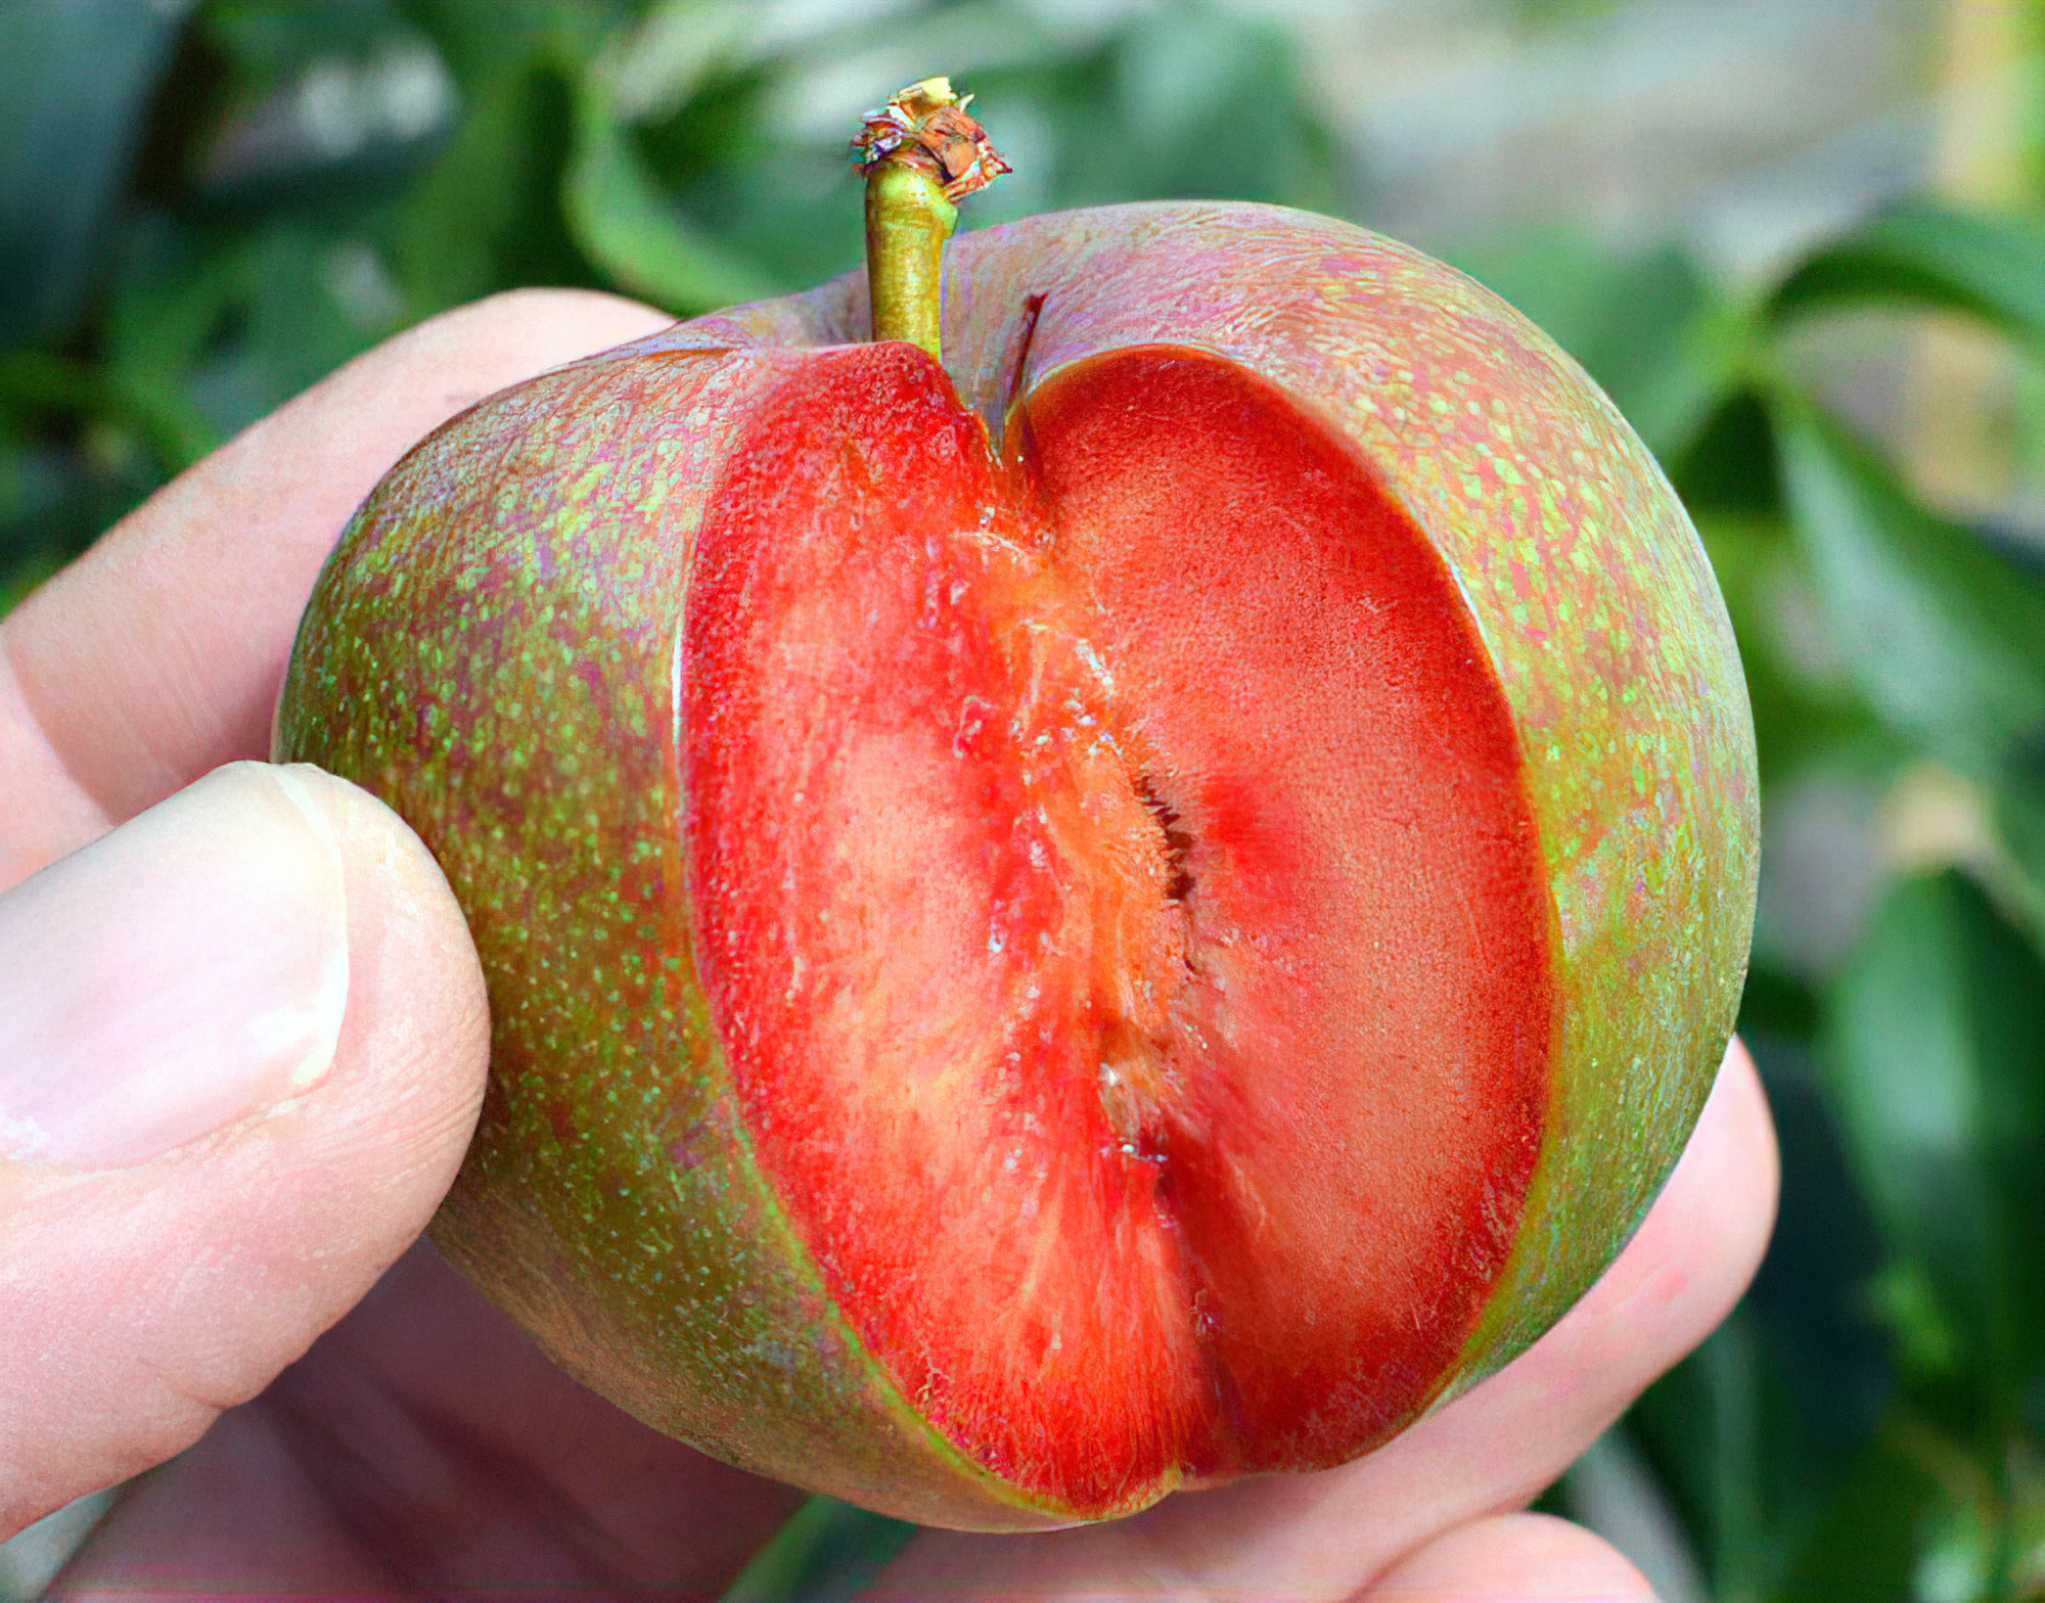 Гибридные абрикосы получены в результате опыления красноплодных